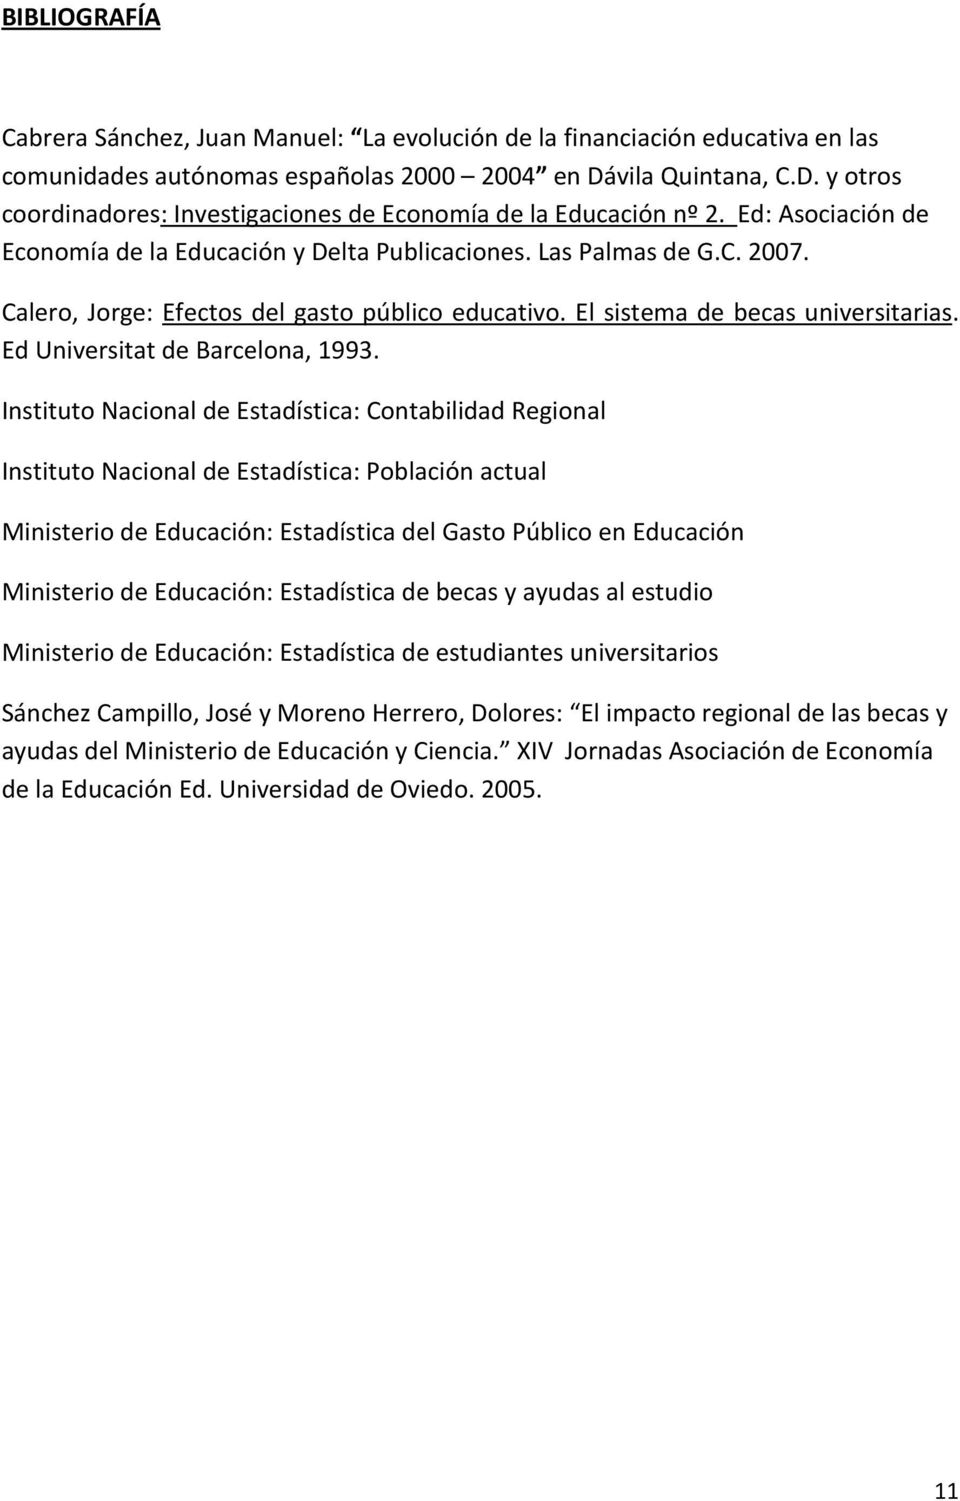 Calero, Jorge: Efectos del gasto público educativo. El sistema de becas universitarias. Ed Universitat de Barcelona, 1993.